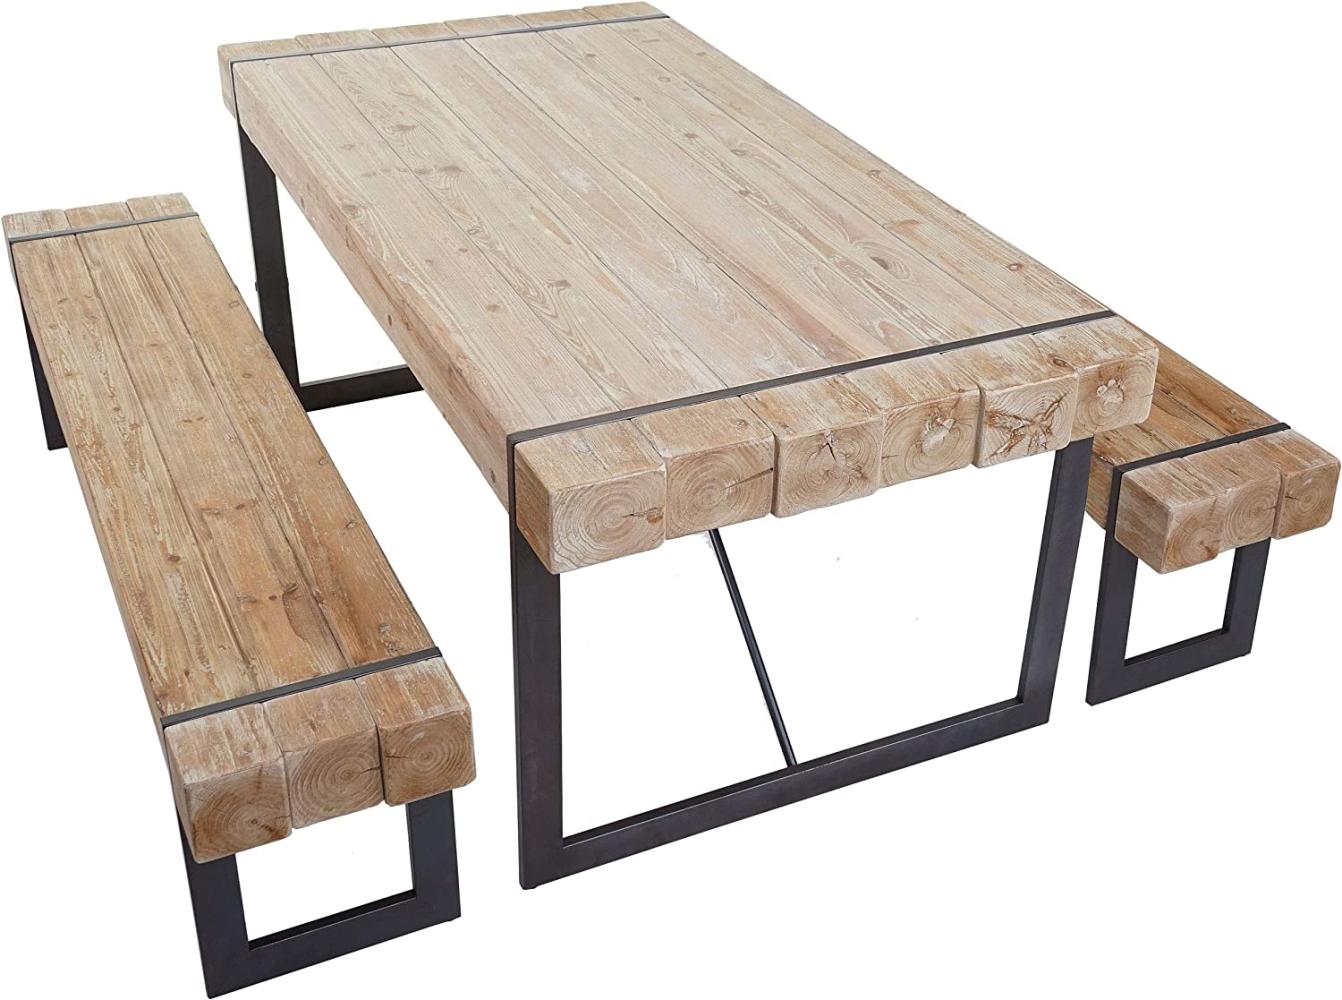 Esszimmergarnitur HWC-A15, Esstisch + 2x Sitzbank, Tanne Holz rustikal massiv MVG-zertifiziert ~ naturfarben 200cm Bild 1